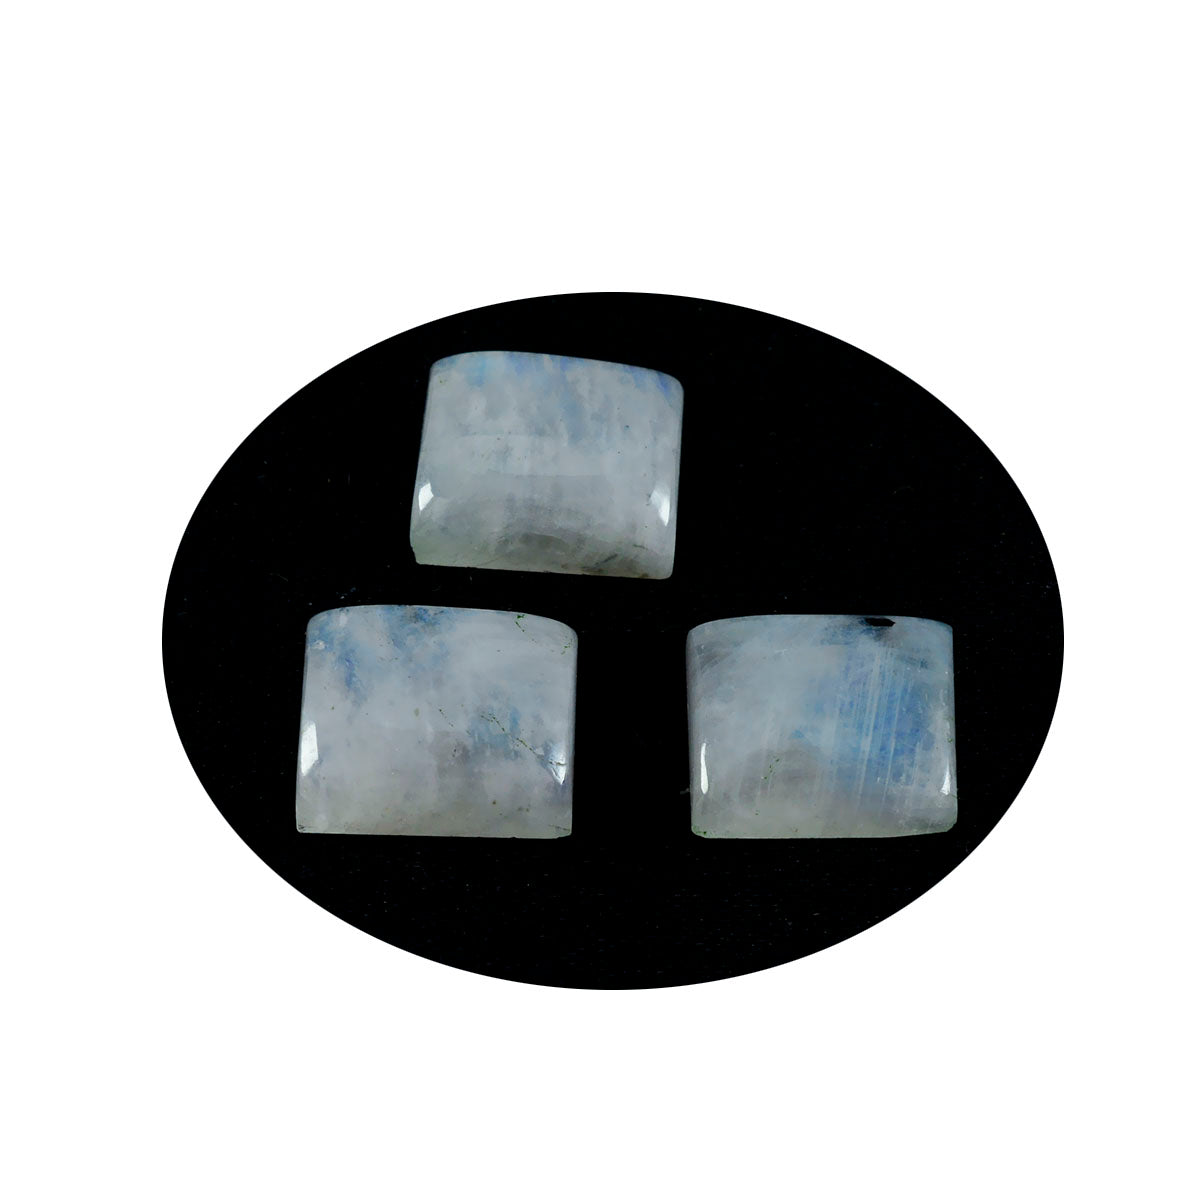 riyogems 1 шт. белый радужный кабошон из лунного камня 10x12 мм восьмиугольной формы удивительного качества, свободный драгоценный камень